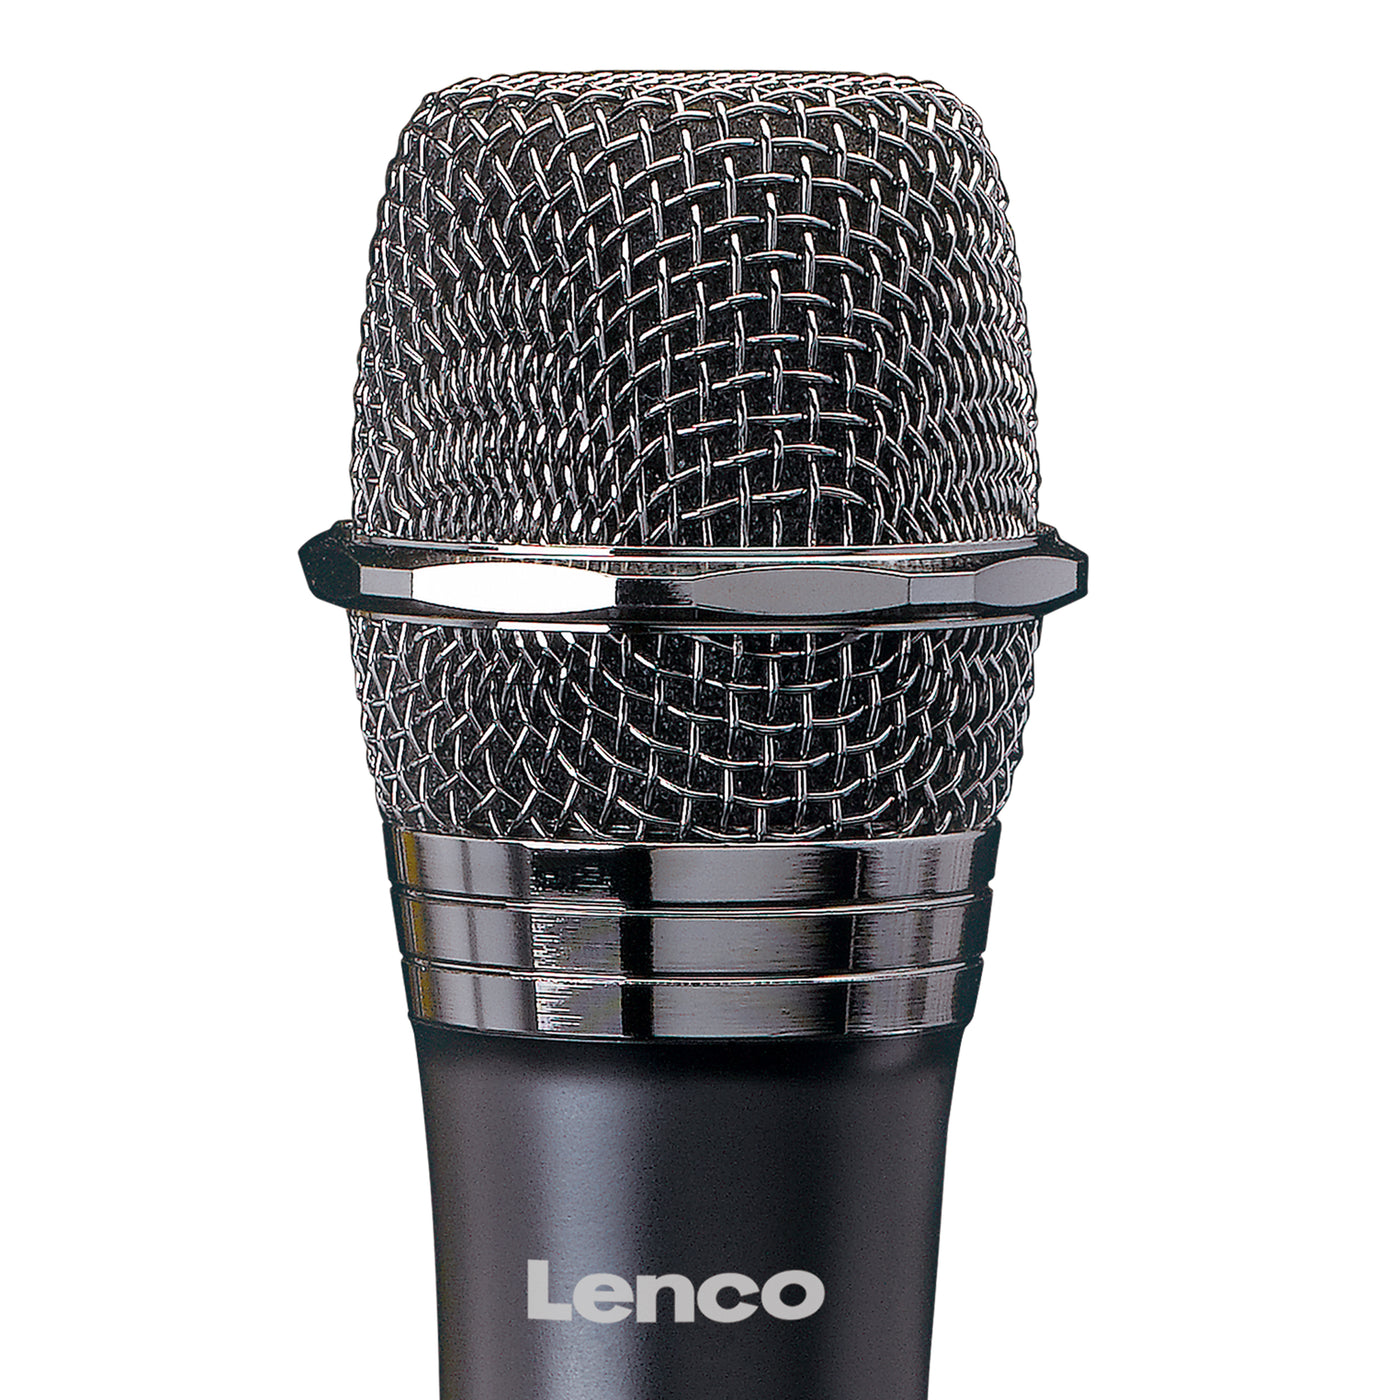 Lenco MCW-011BK - Kabelloses Mikrofon mit 6,3 mm Receiver